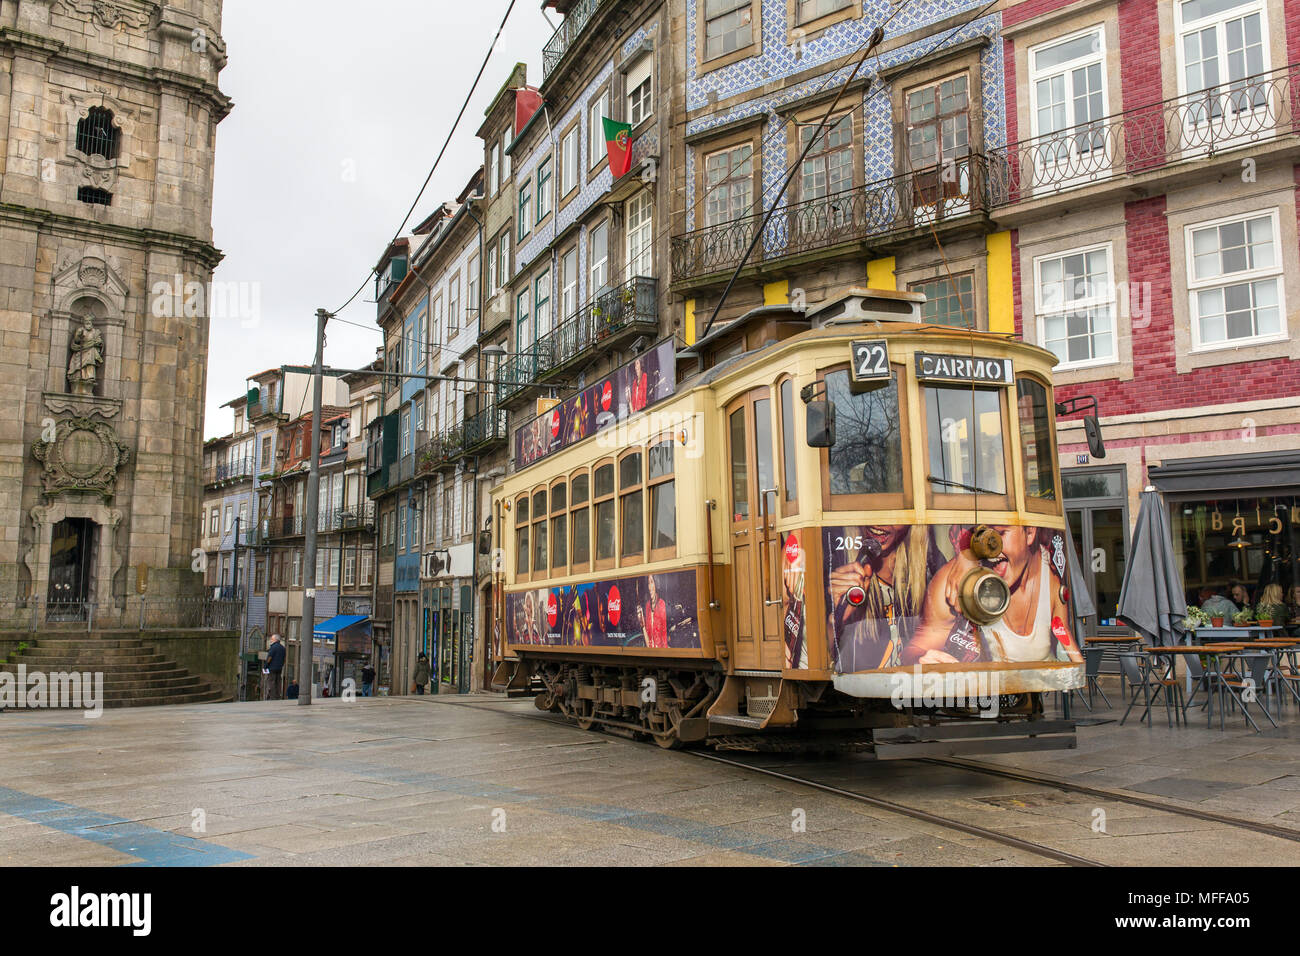 Porto, Portugal - January 16, 2018: Old tram in Porto, Portugal. Stock Photo